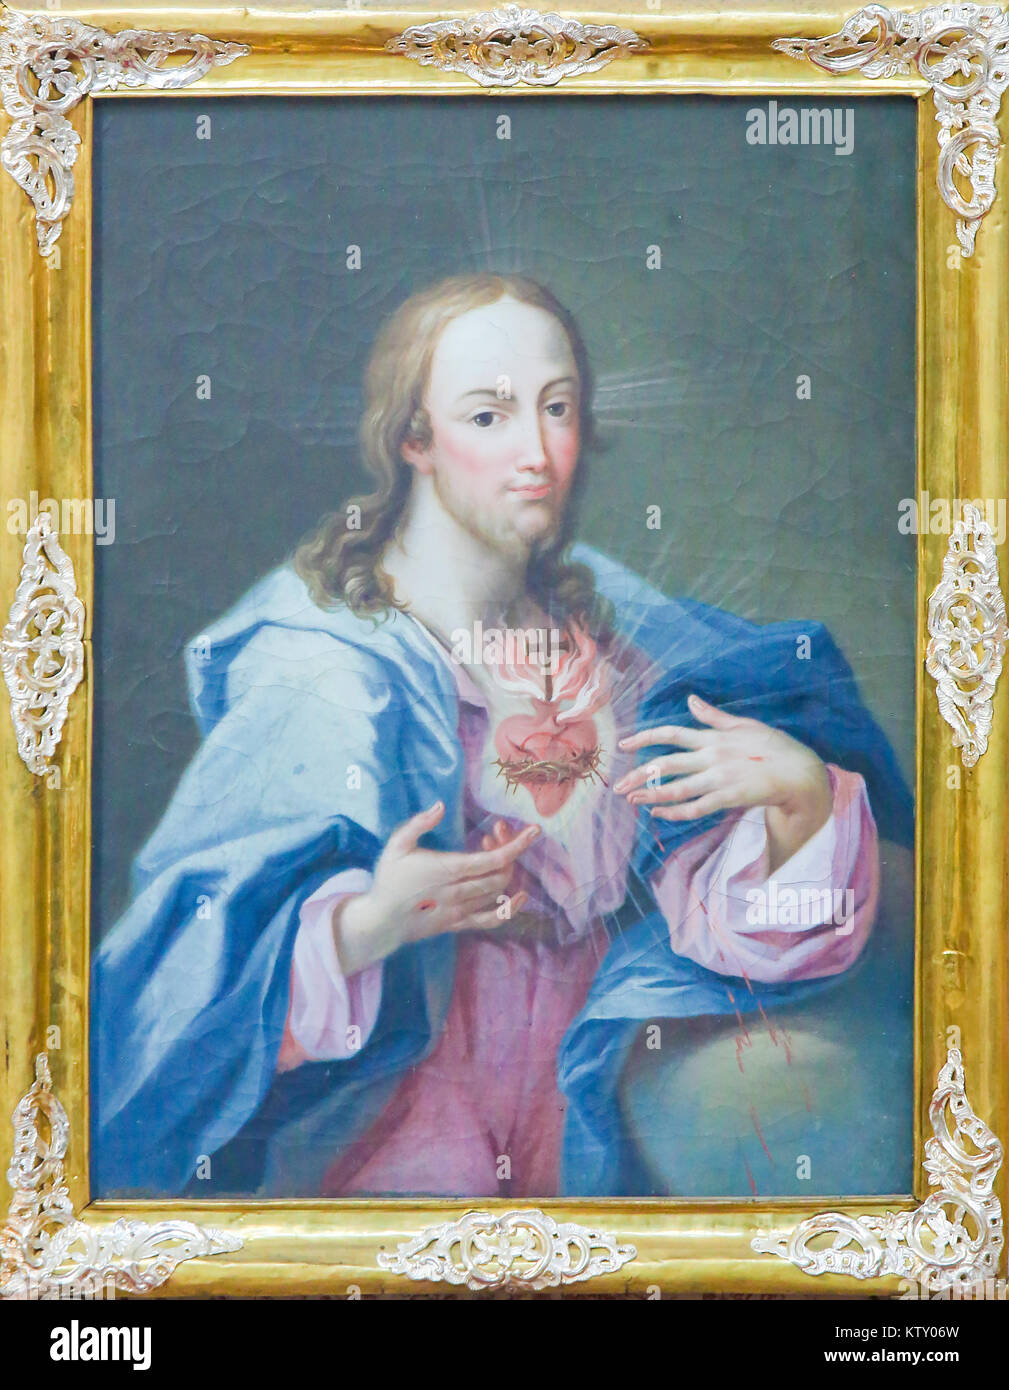 Malerei des Barock vom Heiligen Herzen Jesu Christi in der Basilika St. Mang in Füssen, Bayern, Deutschland. Stockfoto